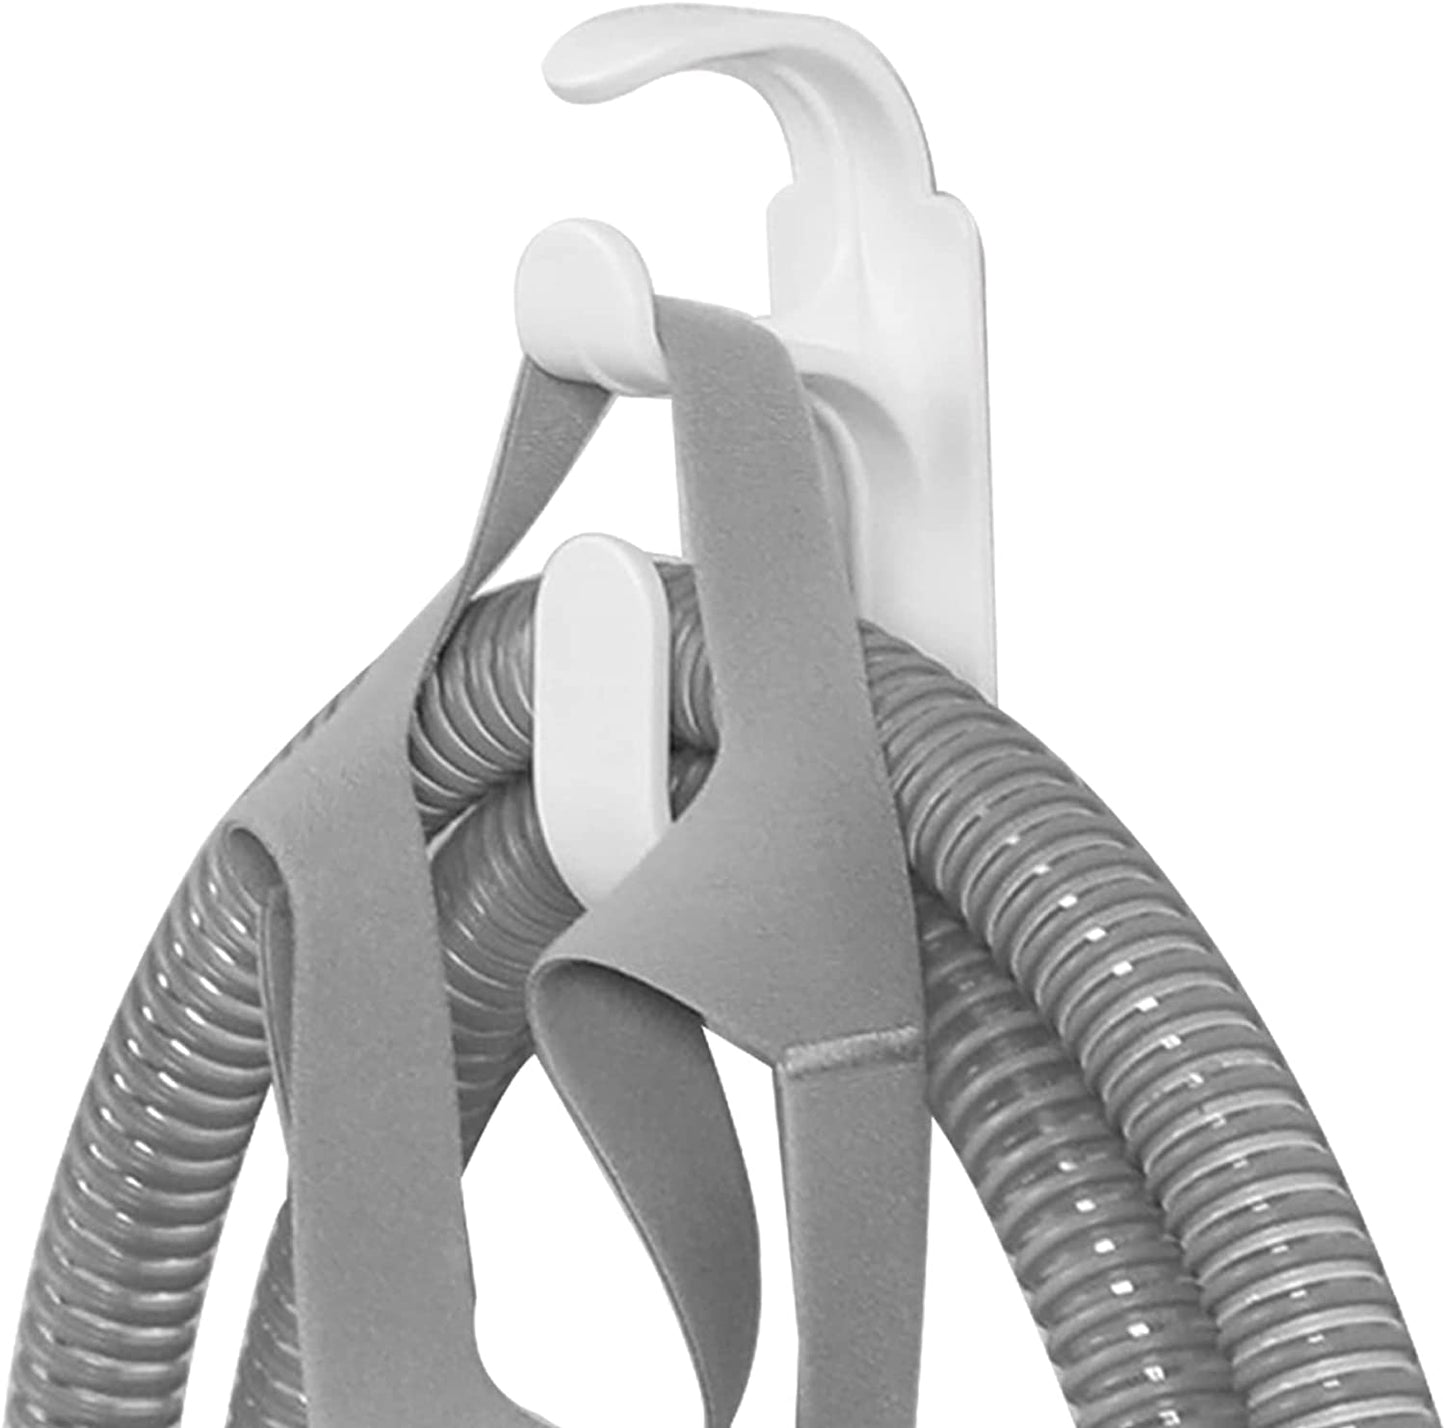 cpap hose holder hanger's hook detail